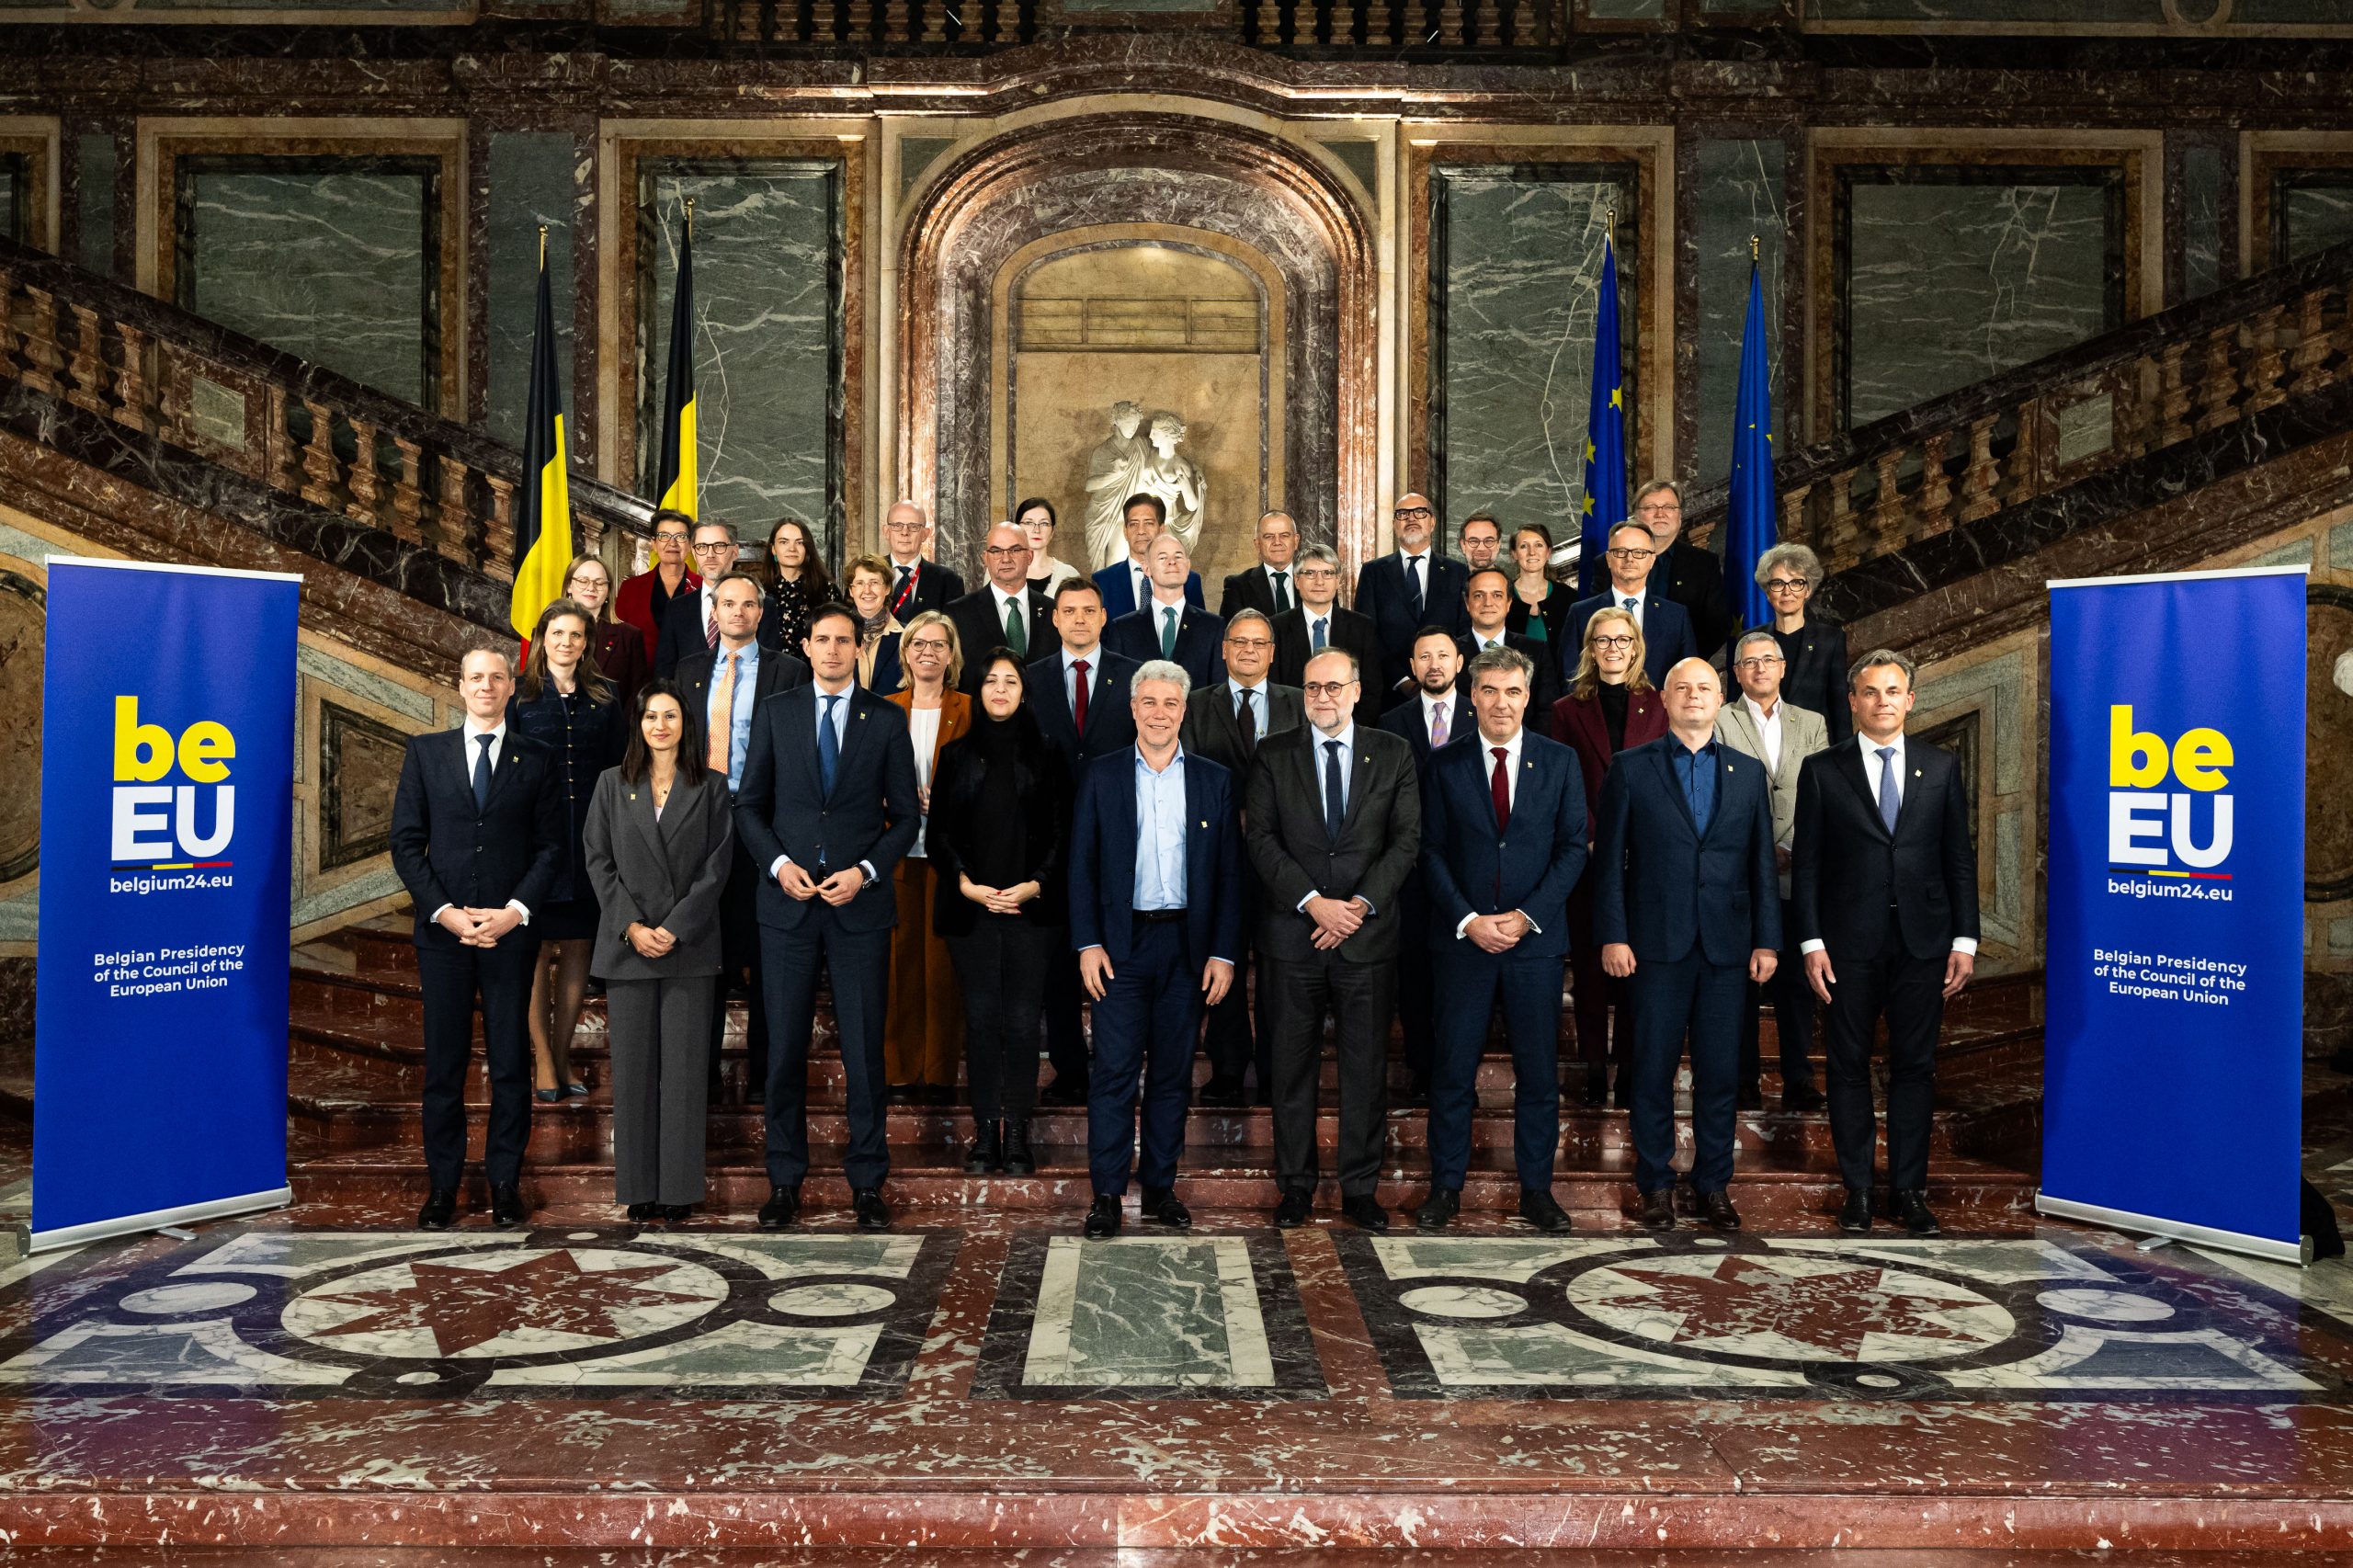 Groepsfoto van de ministers op een trap.